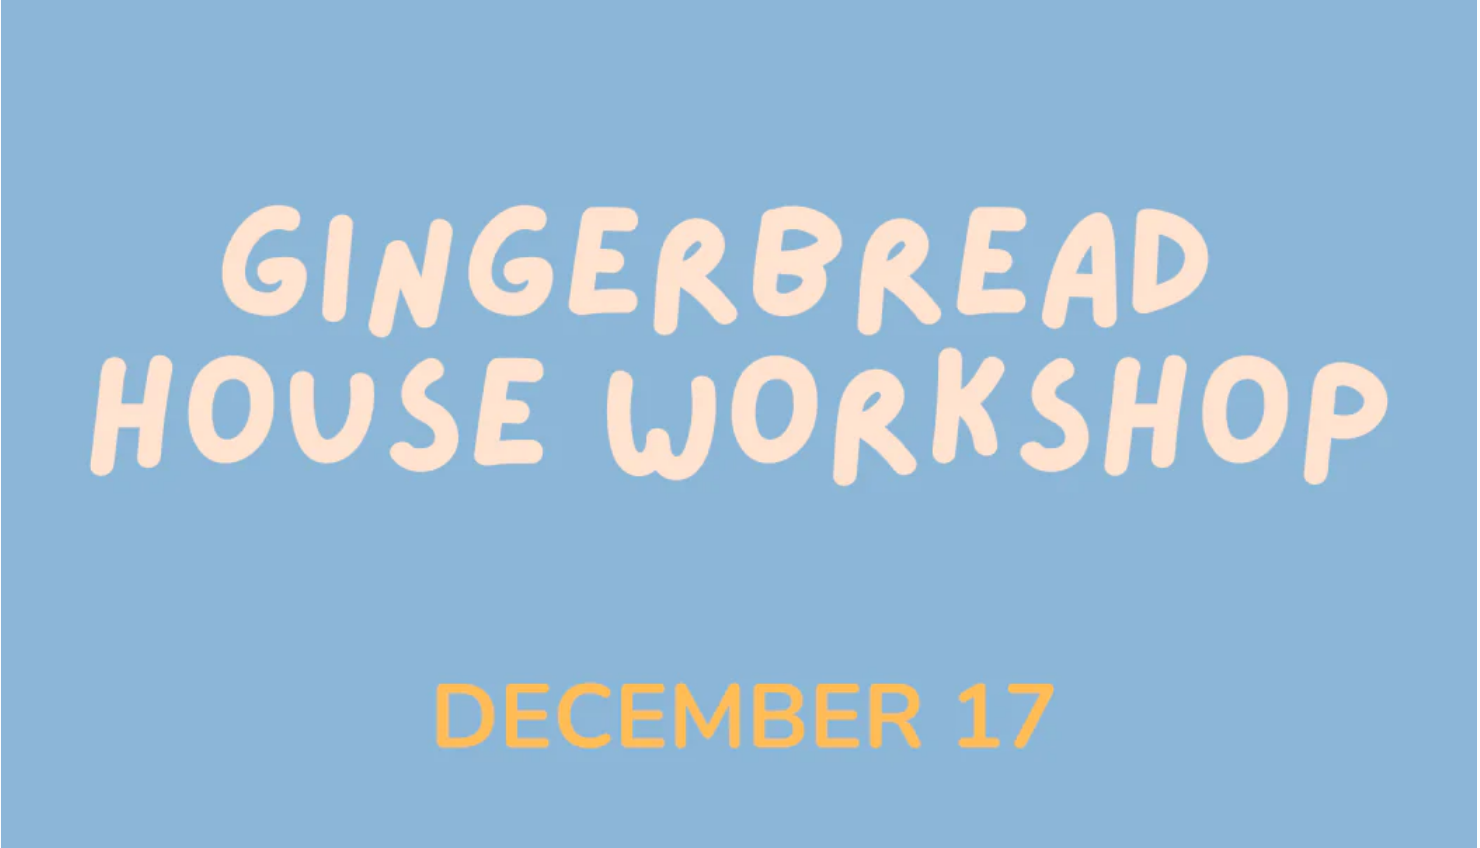 Gingerbread house workshop december 17.